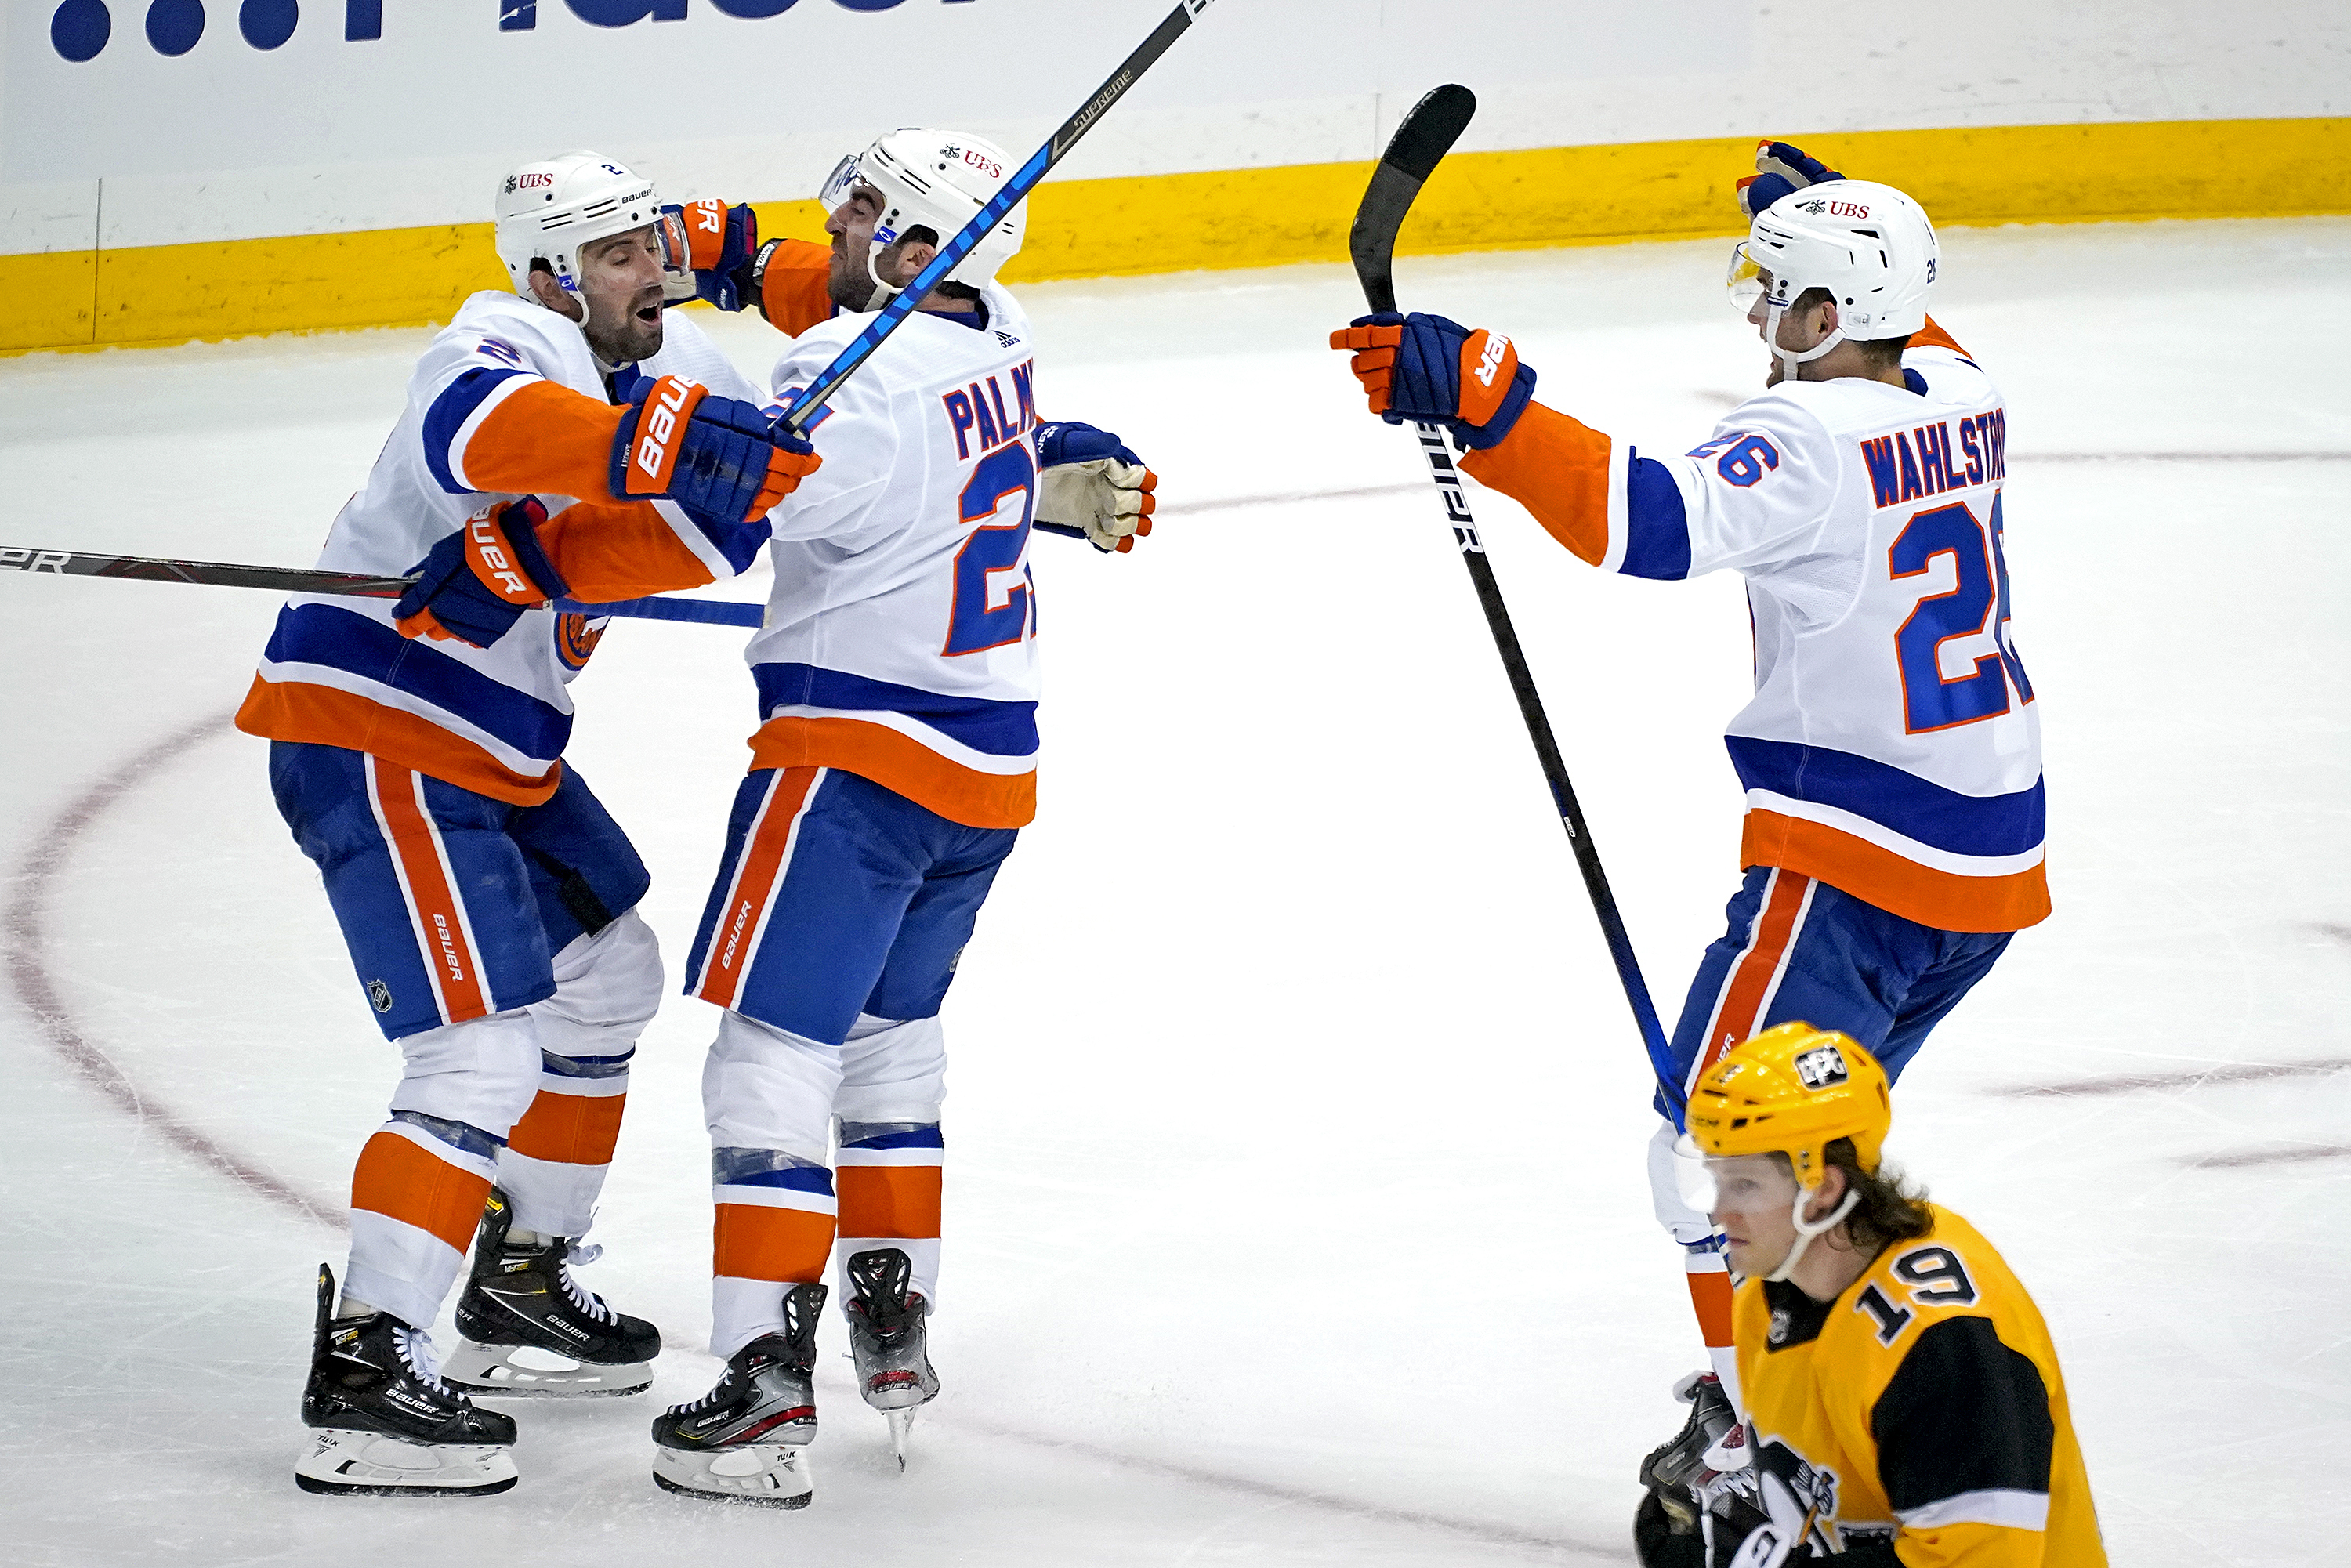 Islanders beat Bruins in Game 6, win series